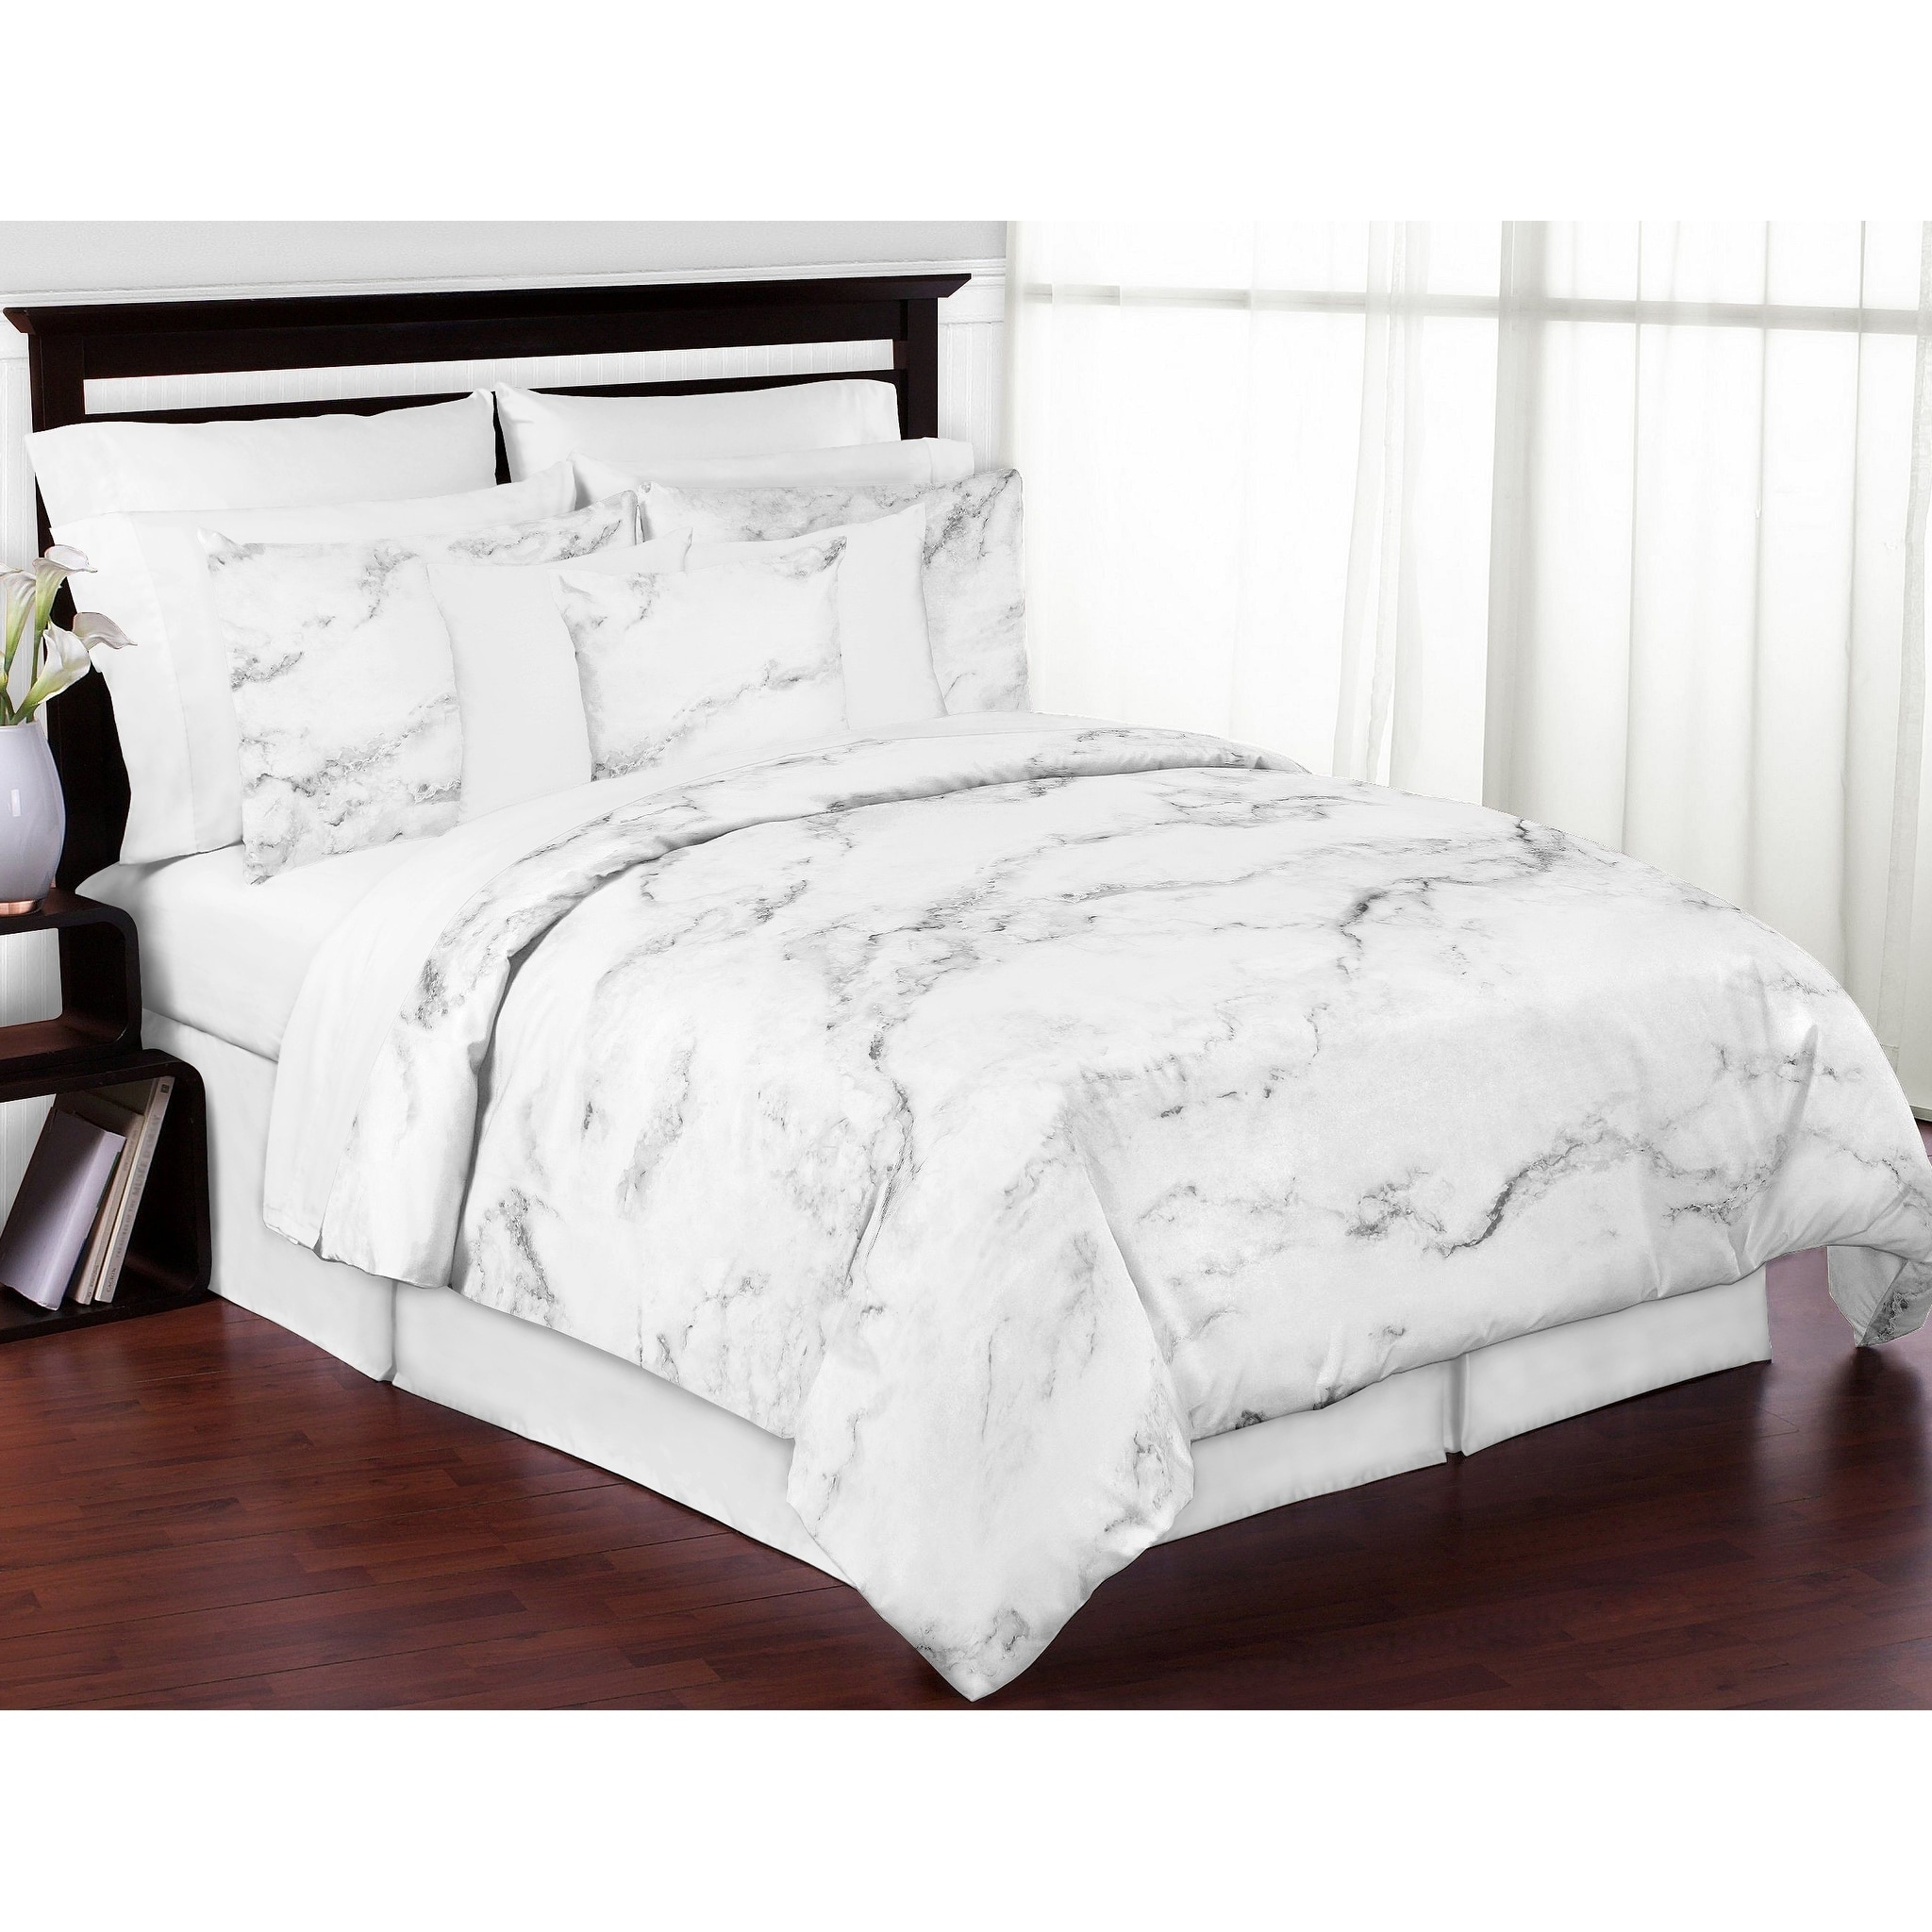 bed comforter sets for sale